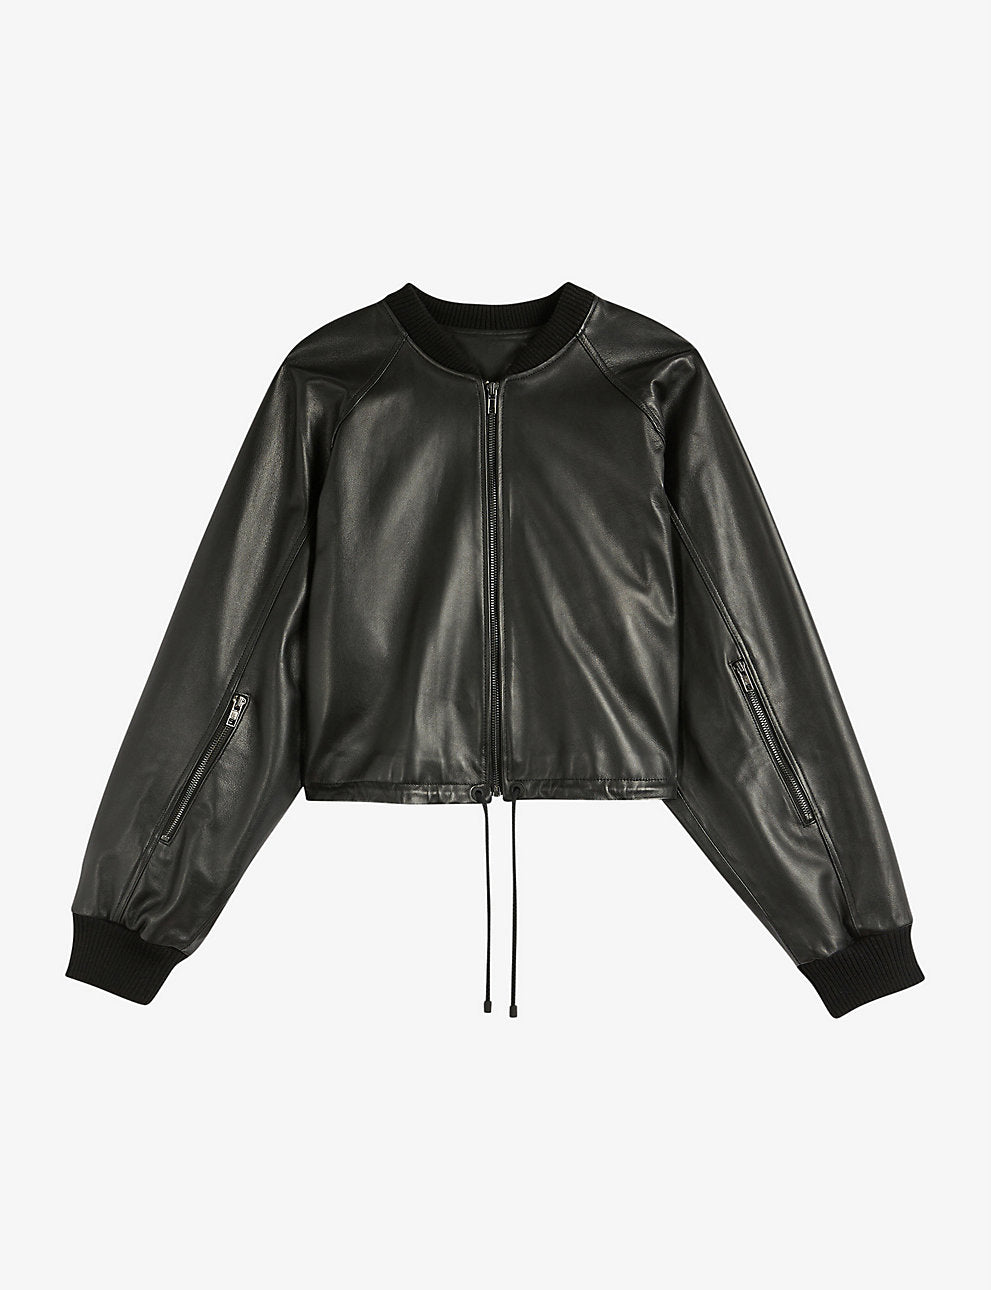 Women’s Black Leather Bomber Jacket